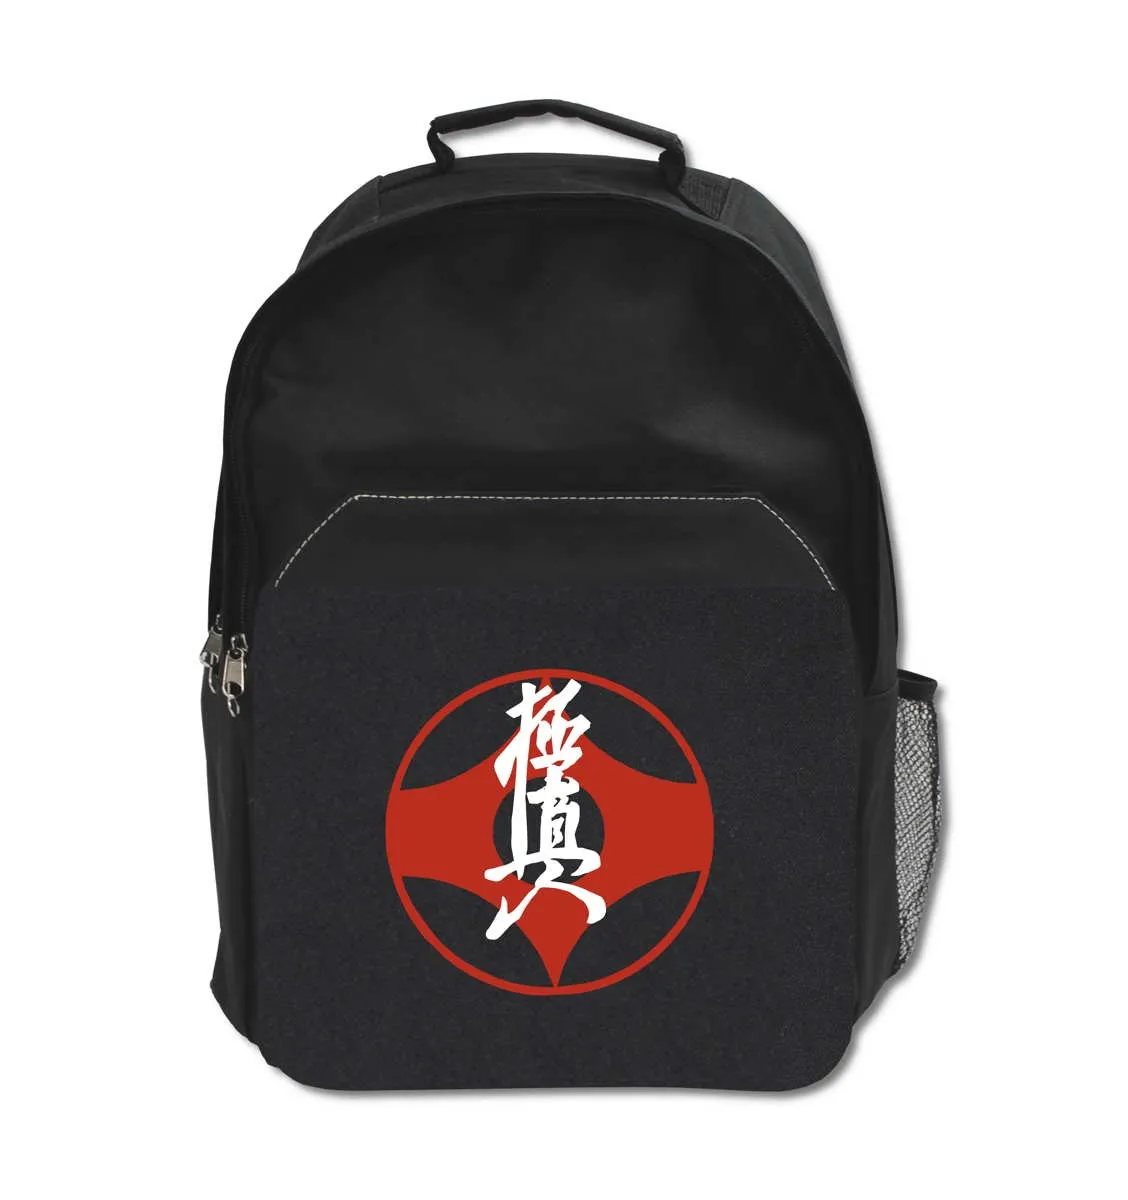 Kyokushinkai backpack